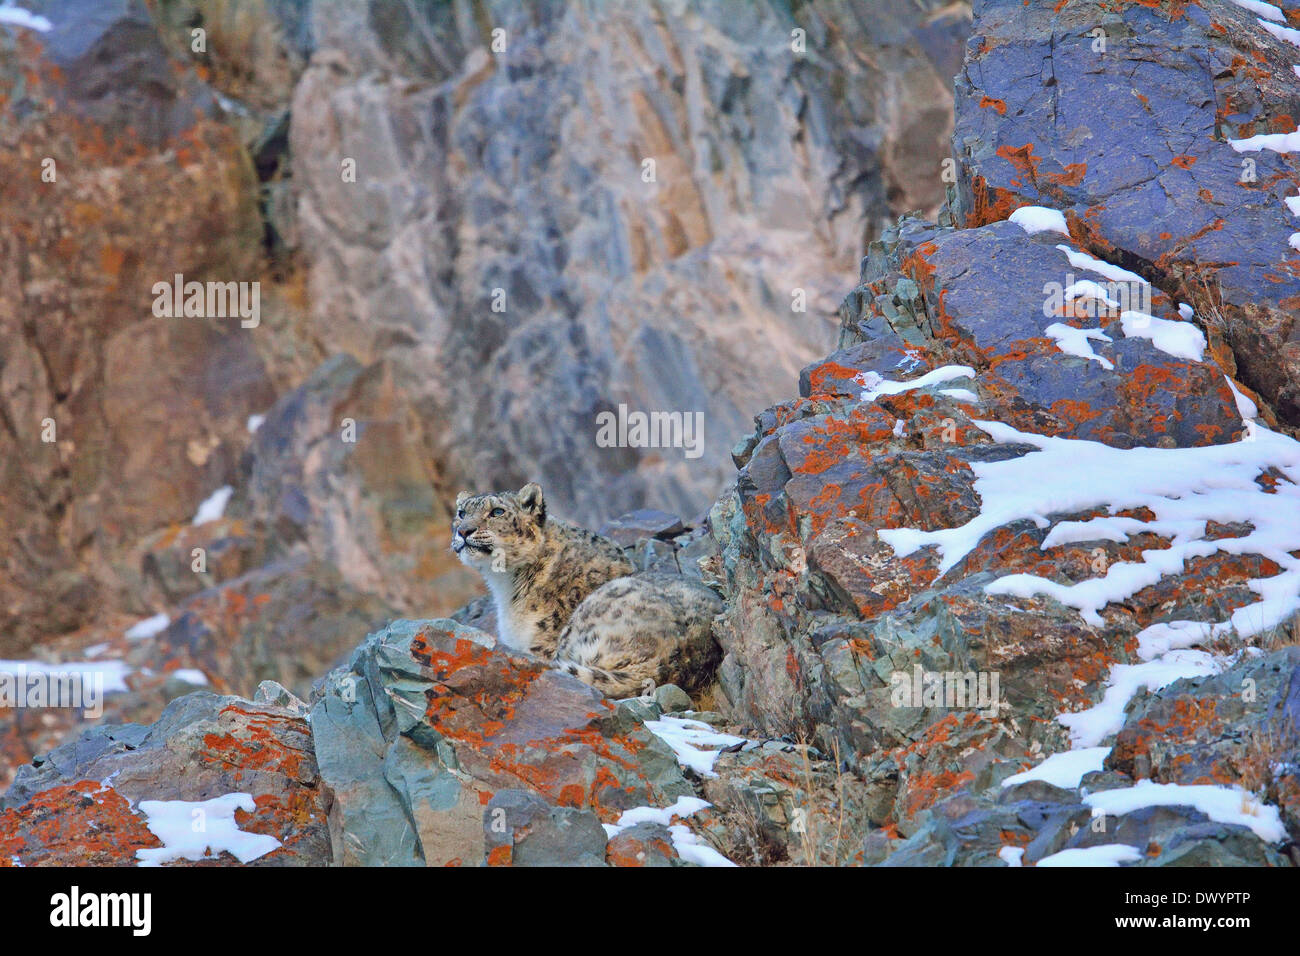 Snow Leopard (Panthera uncia o Uncia uncia) in appoggio su una coperta lichene rock in Hemis national park, Ladakh, India Foto Stock